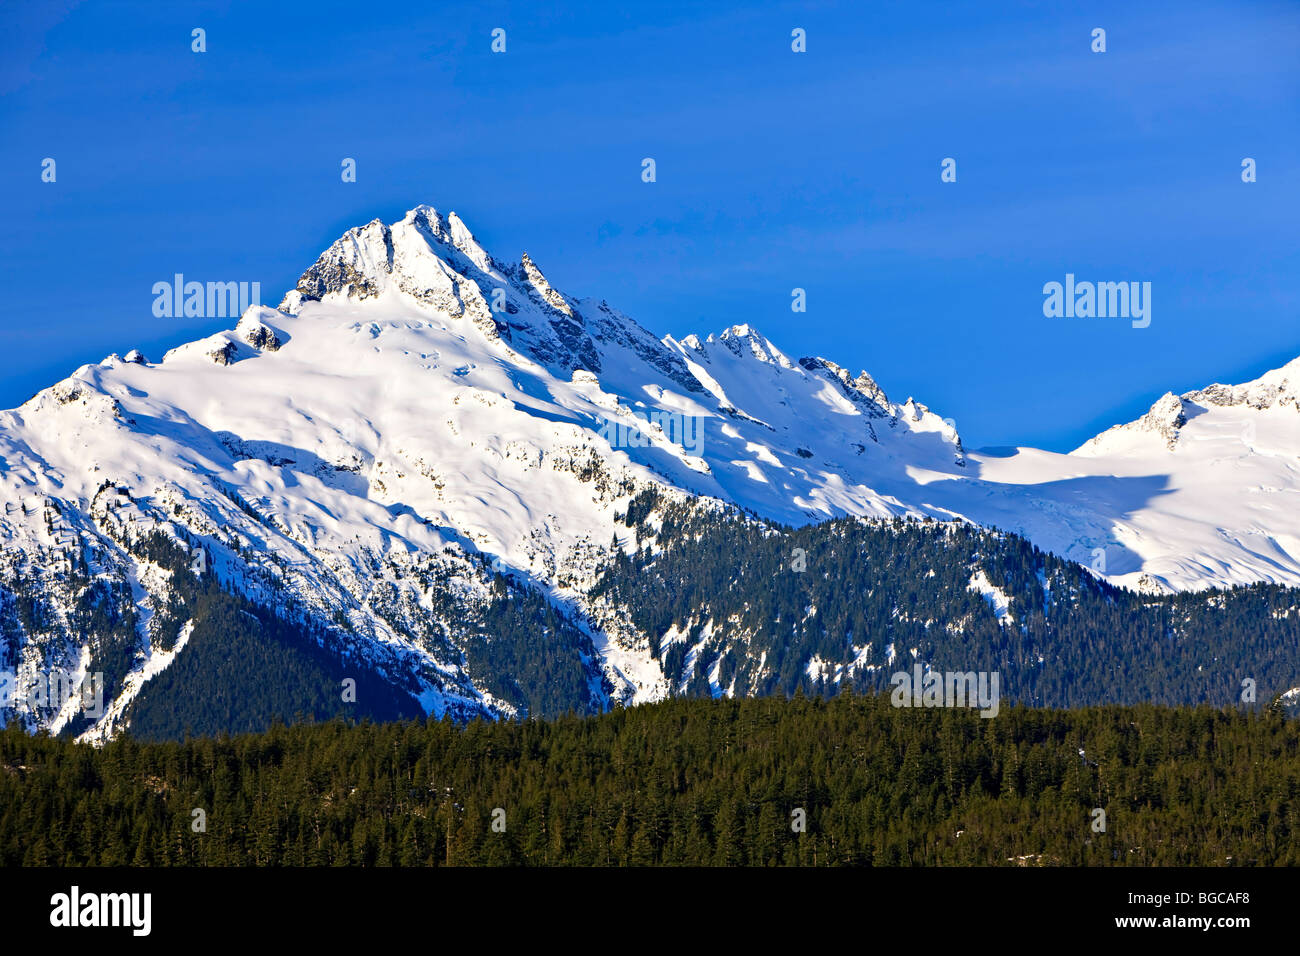 Mount Tantalus (2603 metres/8540 feet), Tantalus Mountain Range, Coast Mountains, British Columbia, Canada. Stock Photo